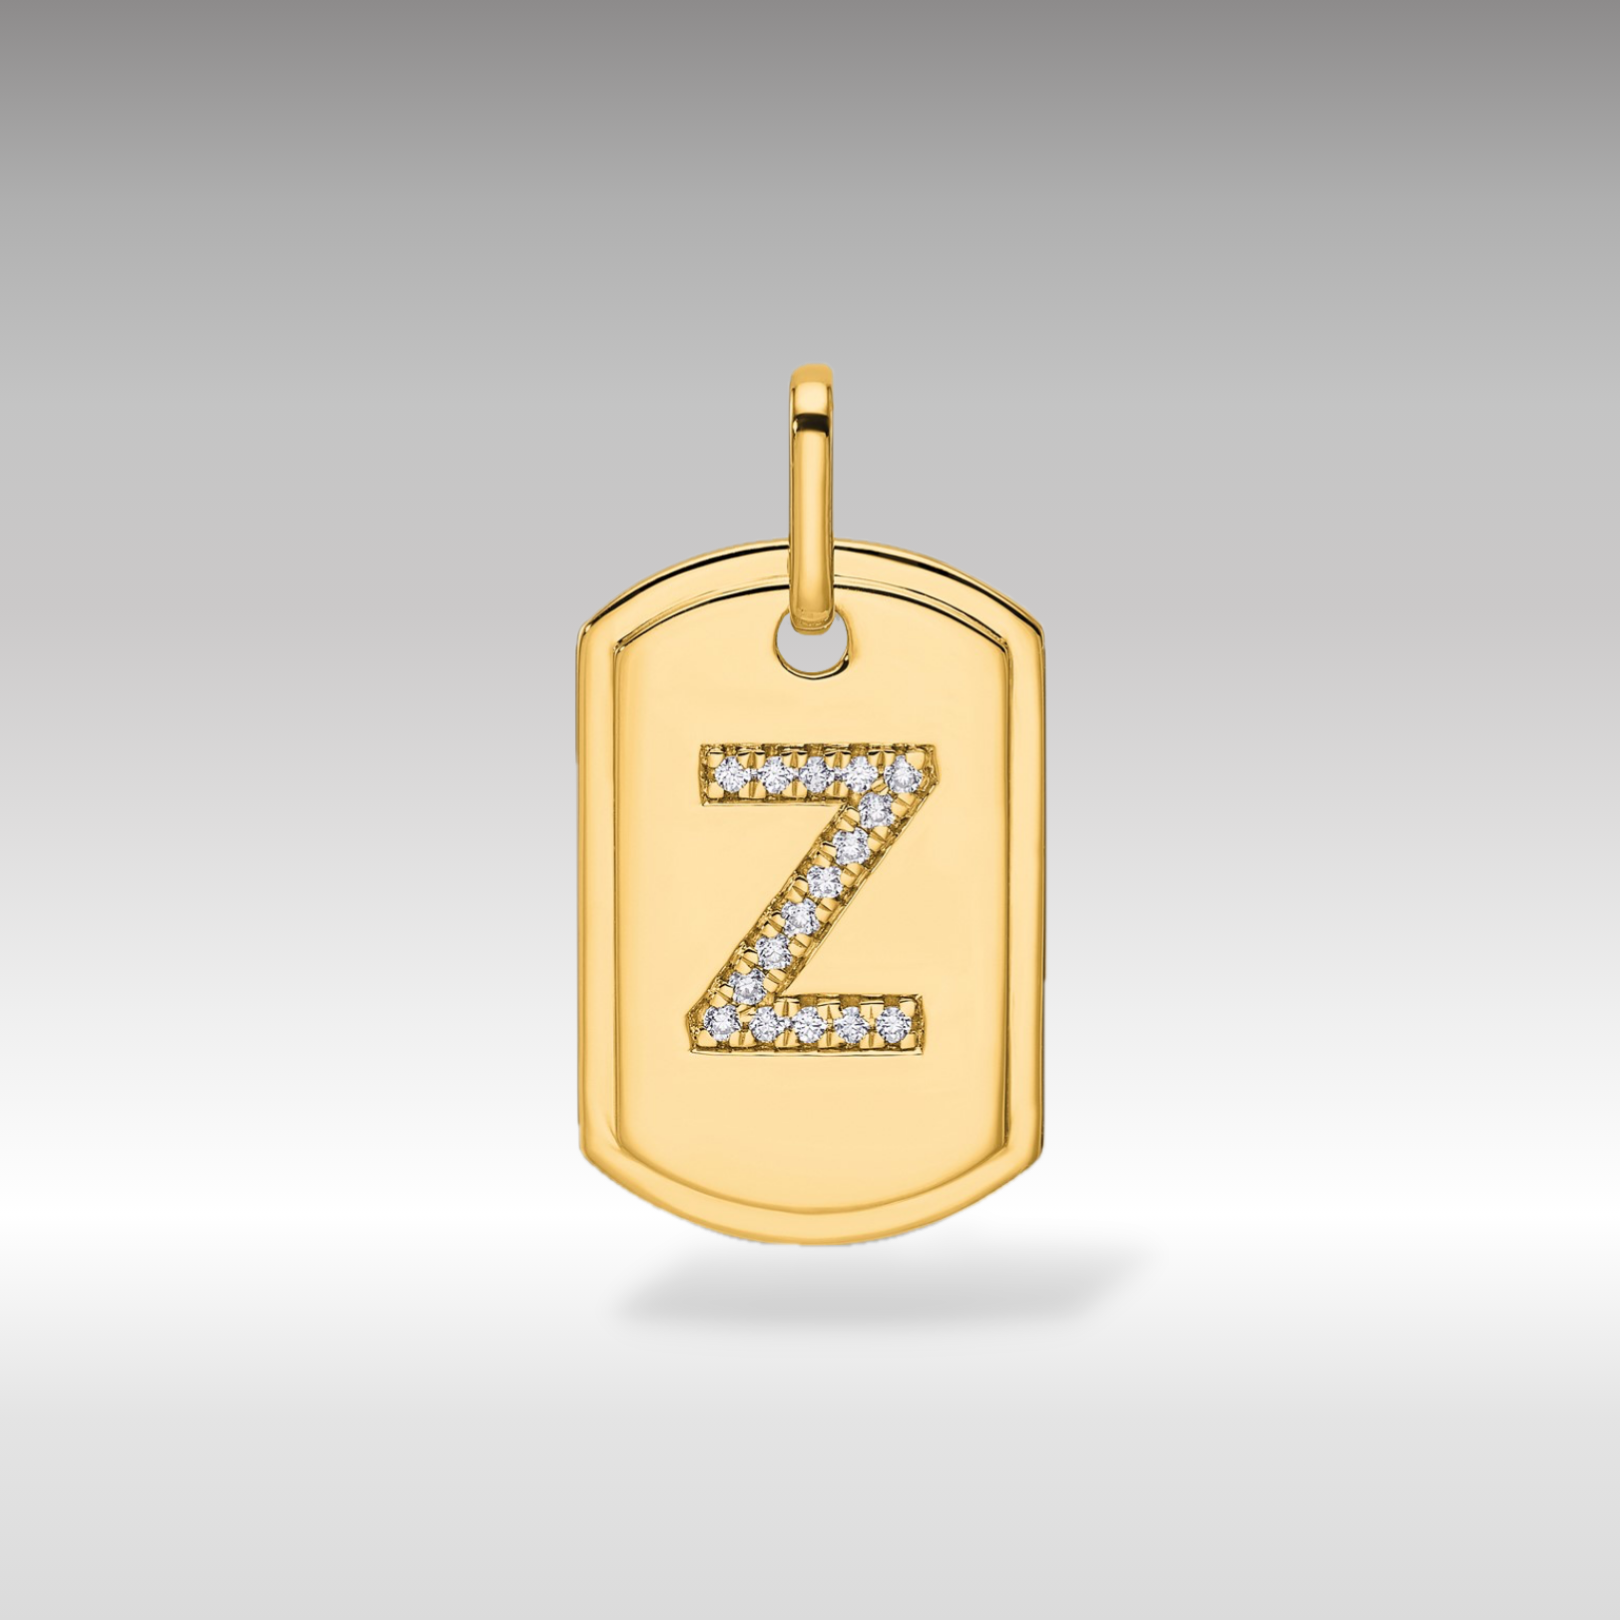 14K Gold Initial "Z" Dog Tag With Genuine Diamonds - Charlie & Co. Jewelry